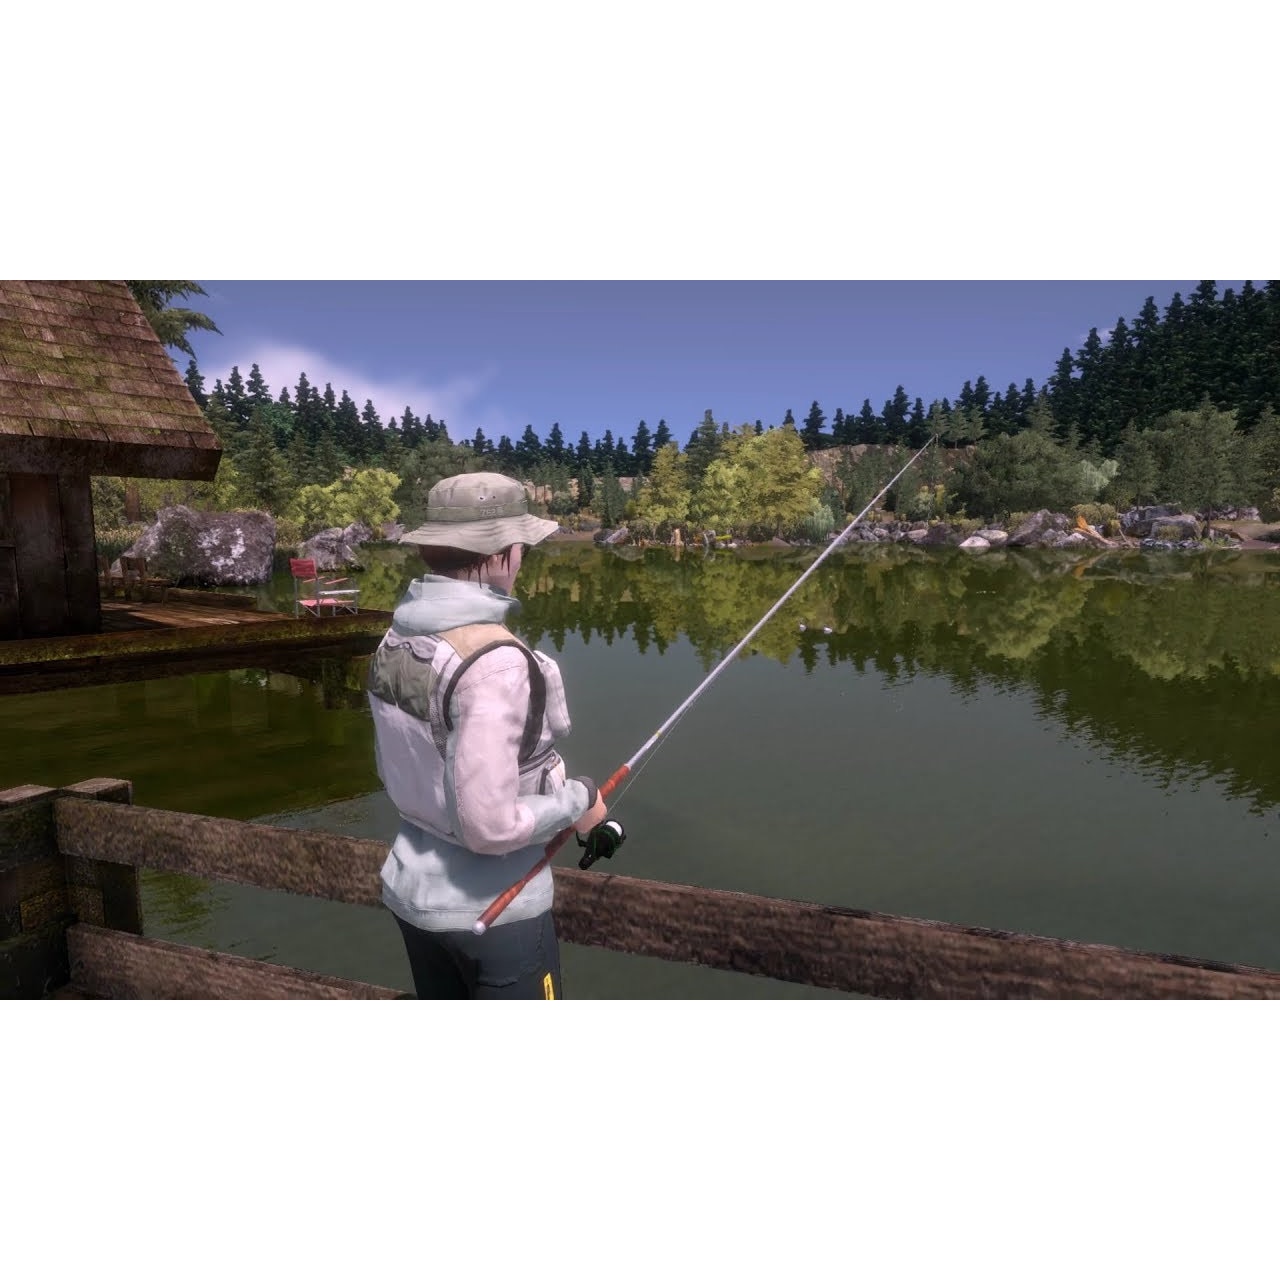 Топ игр про рыбалку